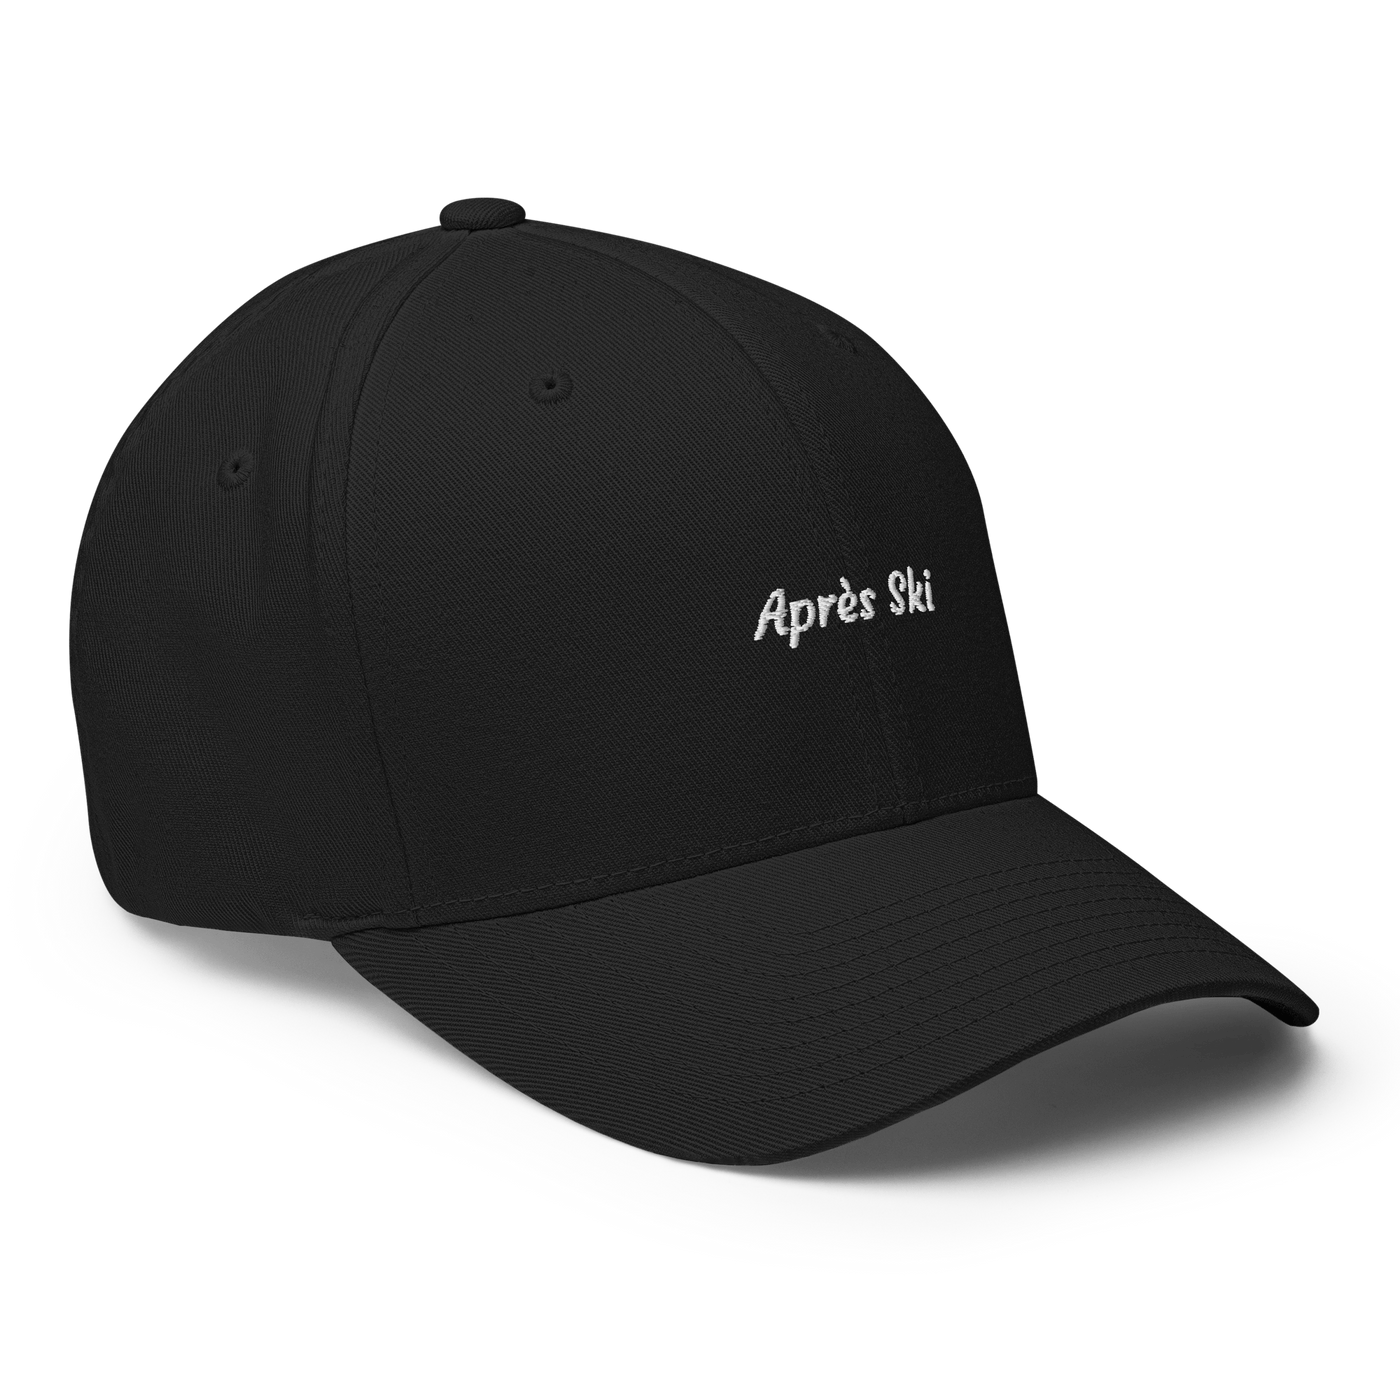 Après Ski Flexfit Cap - Black - S/M - Just Another Cap Store